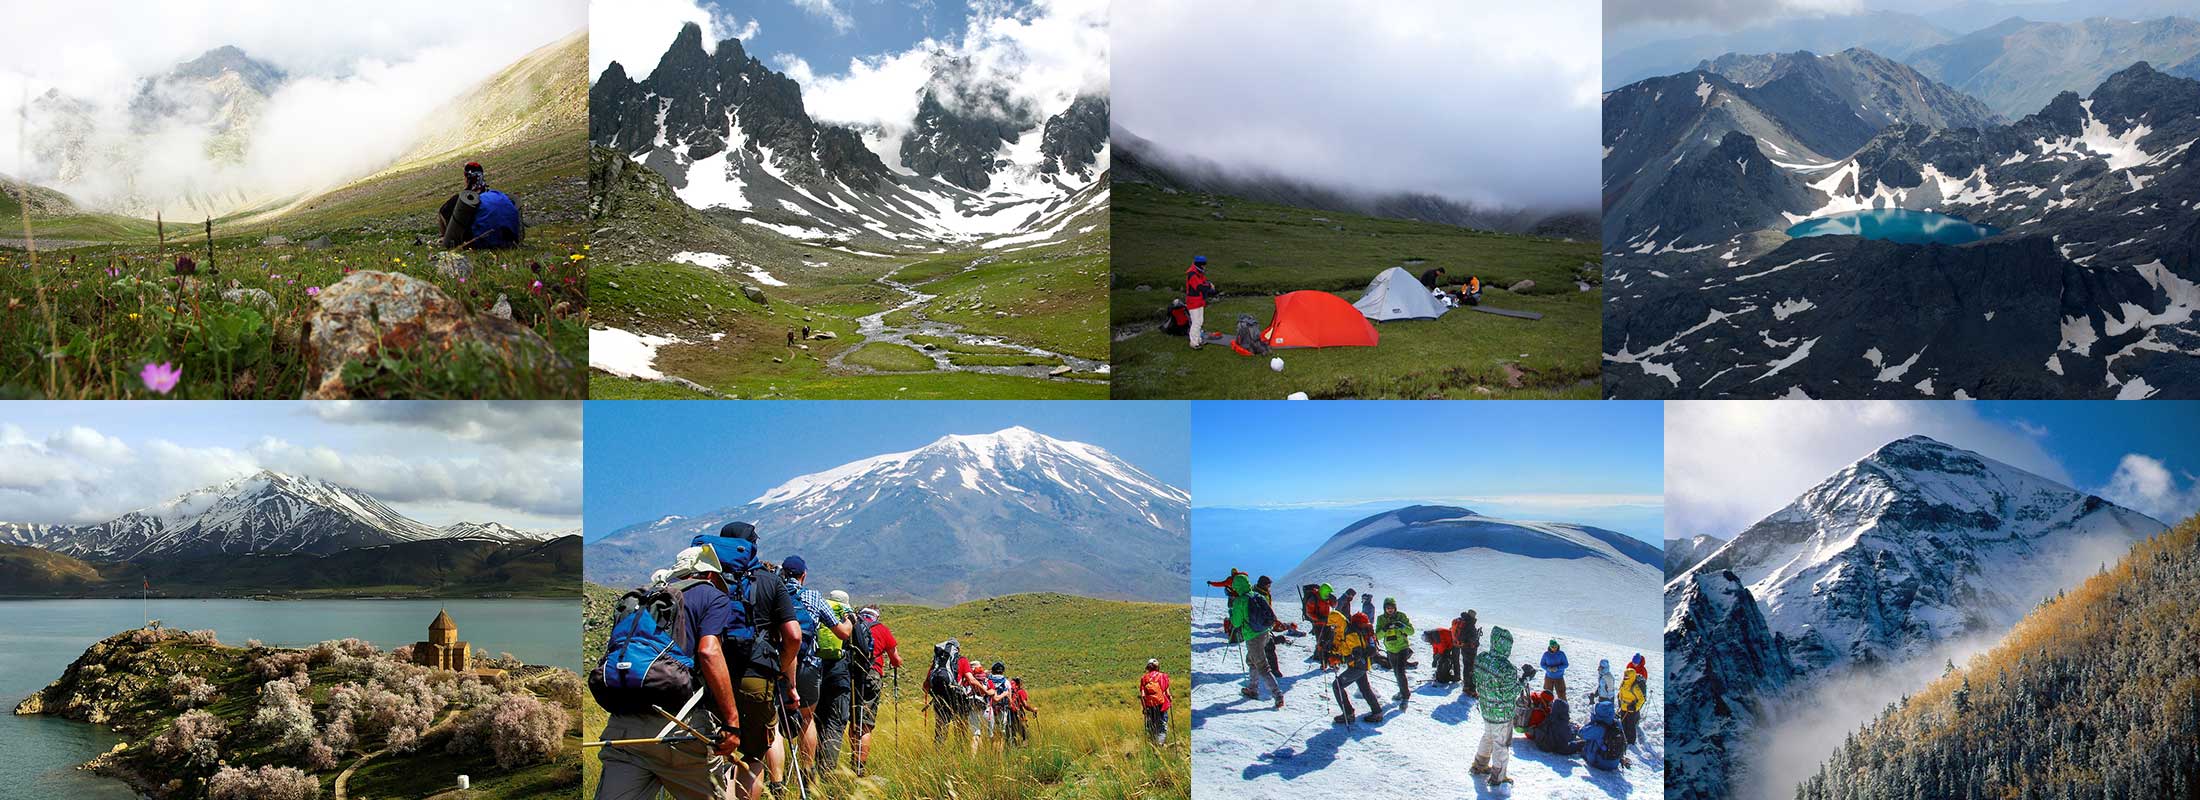 mountaineering-8-DAYS-MOUNT-KACKAR-ARARAT-EXPEDITION-TREKKING